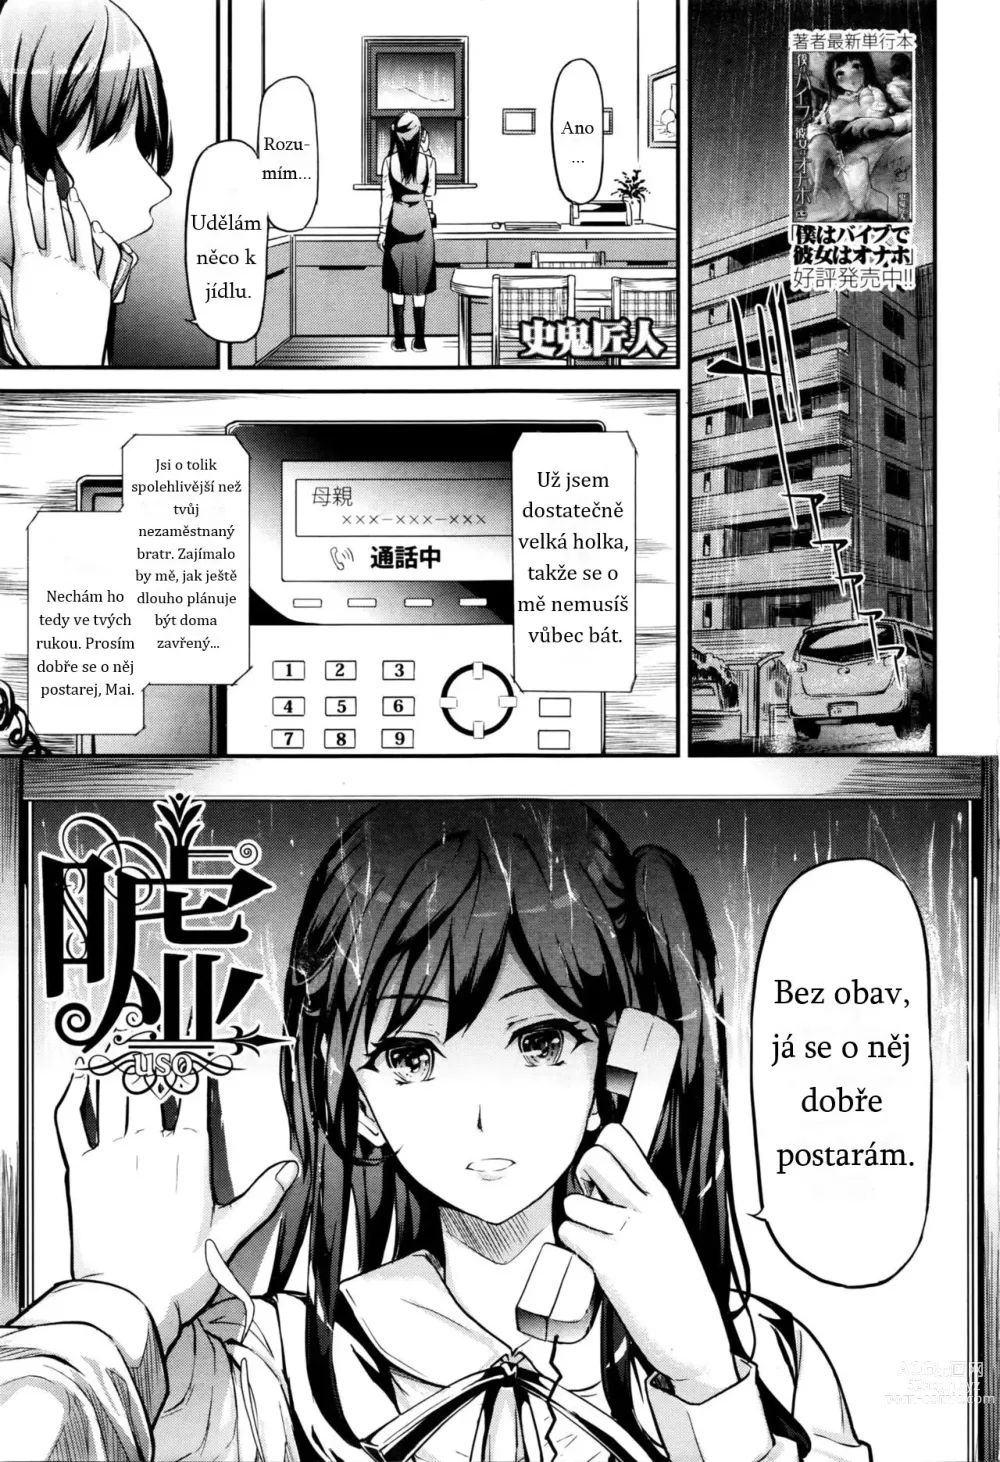 Page 1 of manga Lies